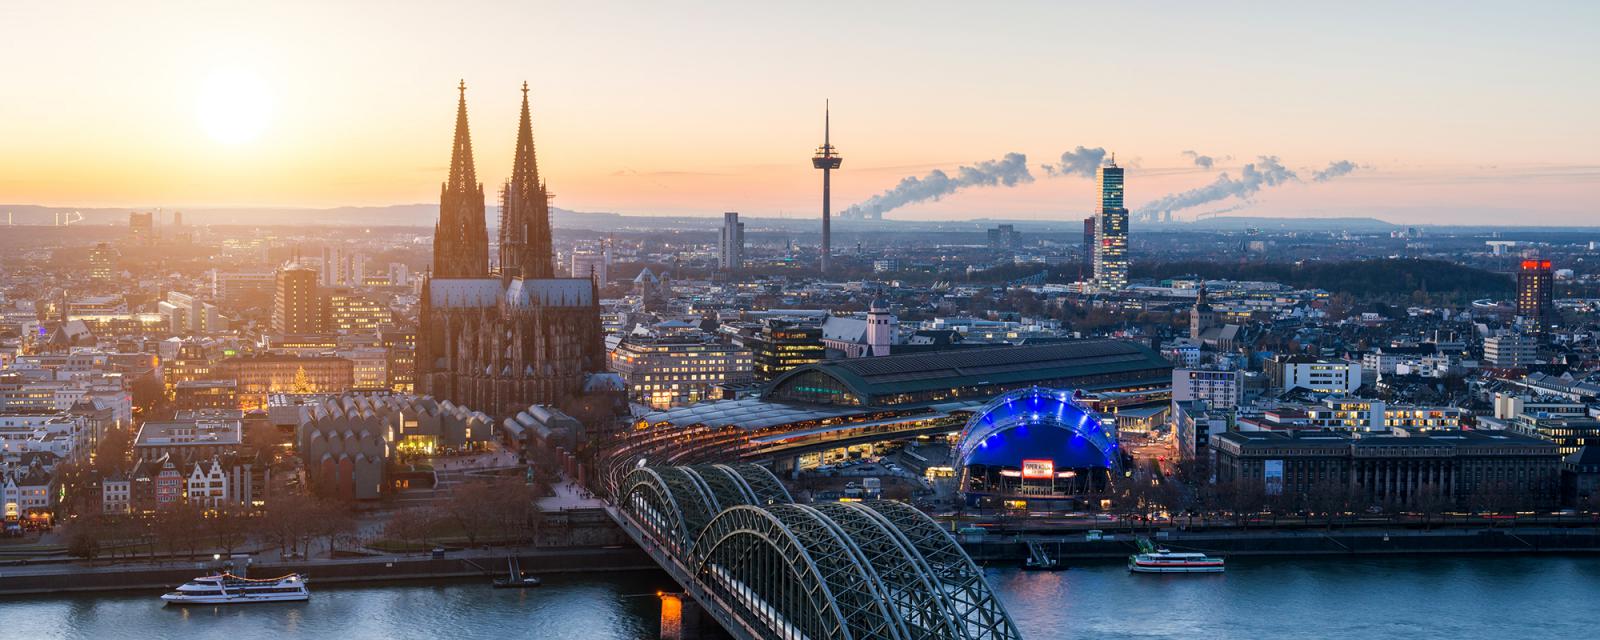 De mooiste fotoplekken voor jouw stedentrip naar Keulen 